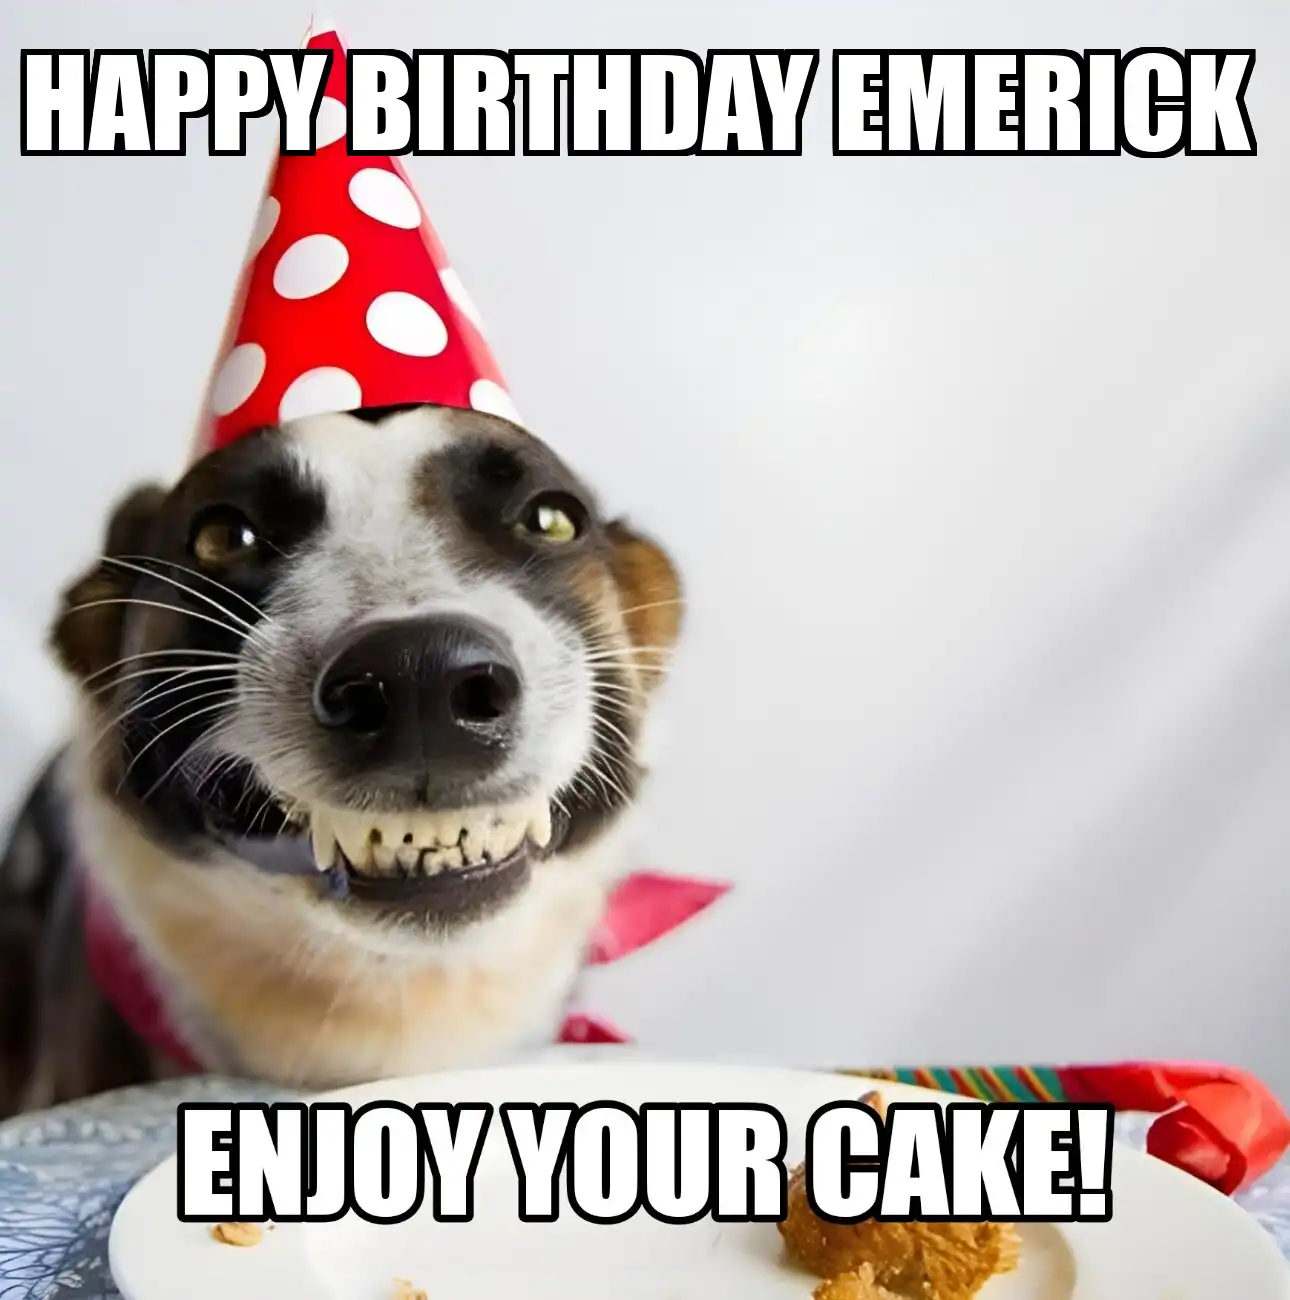 Happy Birthday Emerick Enjoy Your Cake Dog Meme